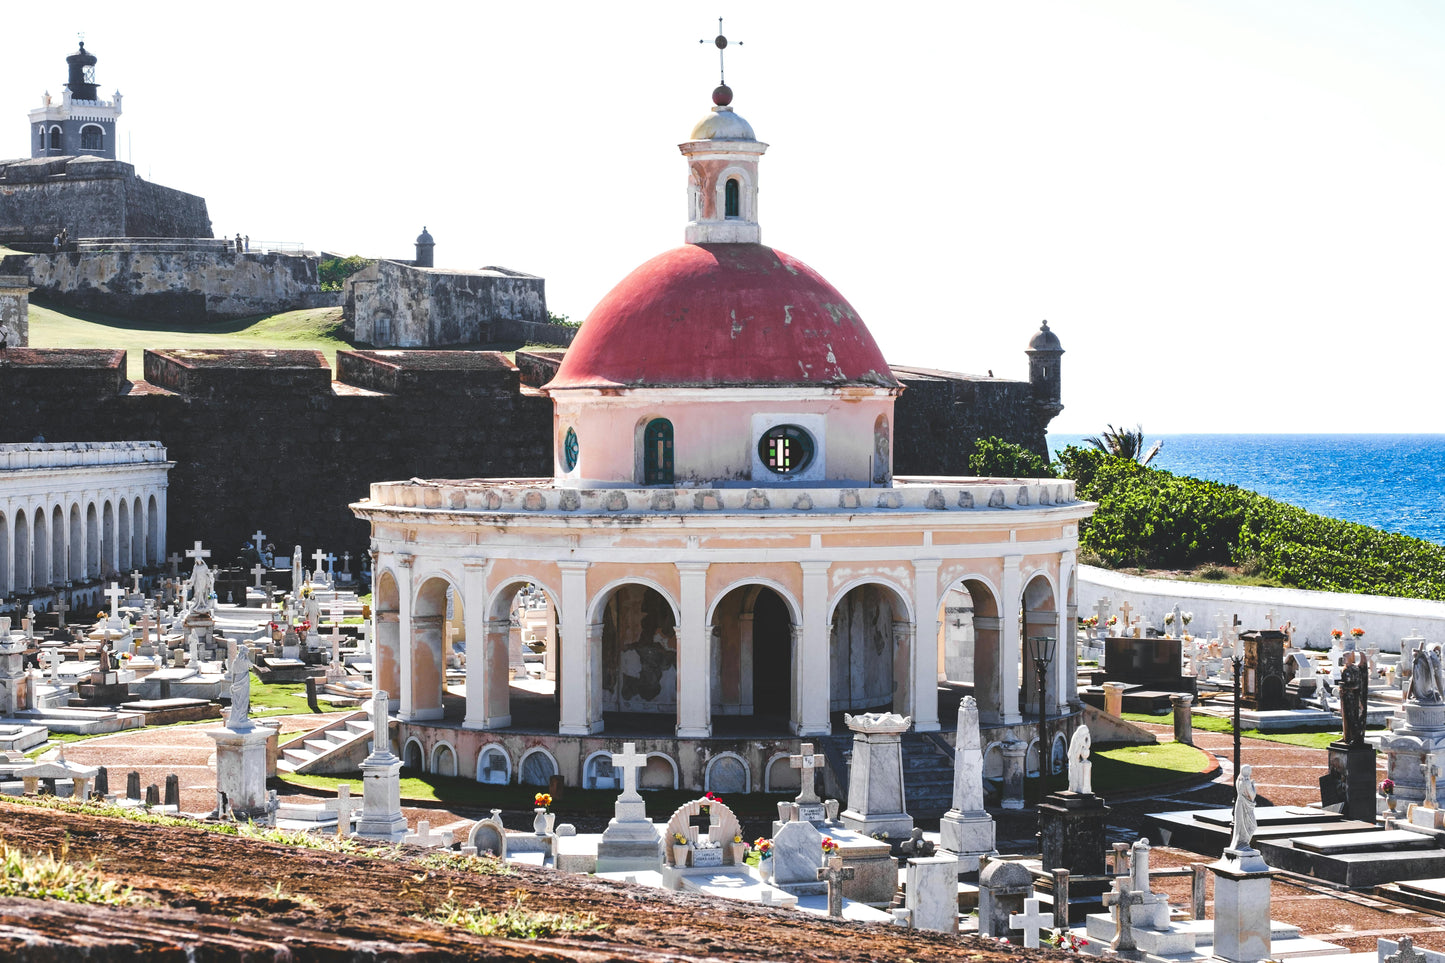 The Best of Puerto Rico with Rachel Bires - Reservation Deposit